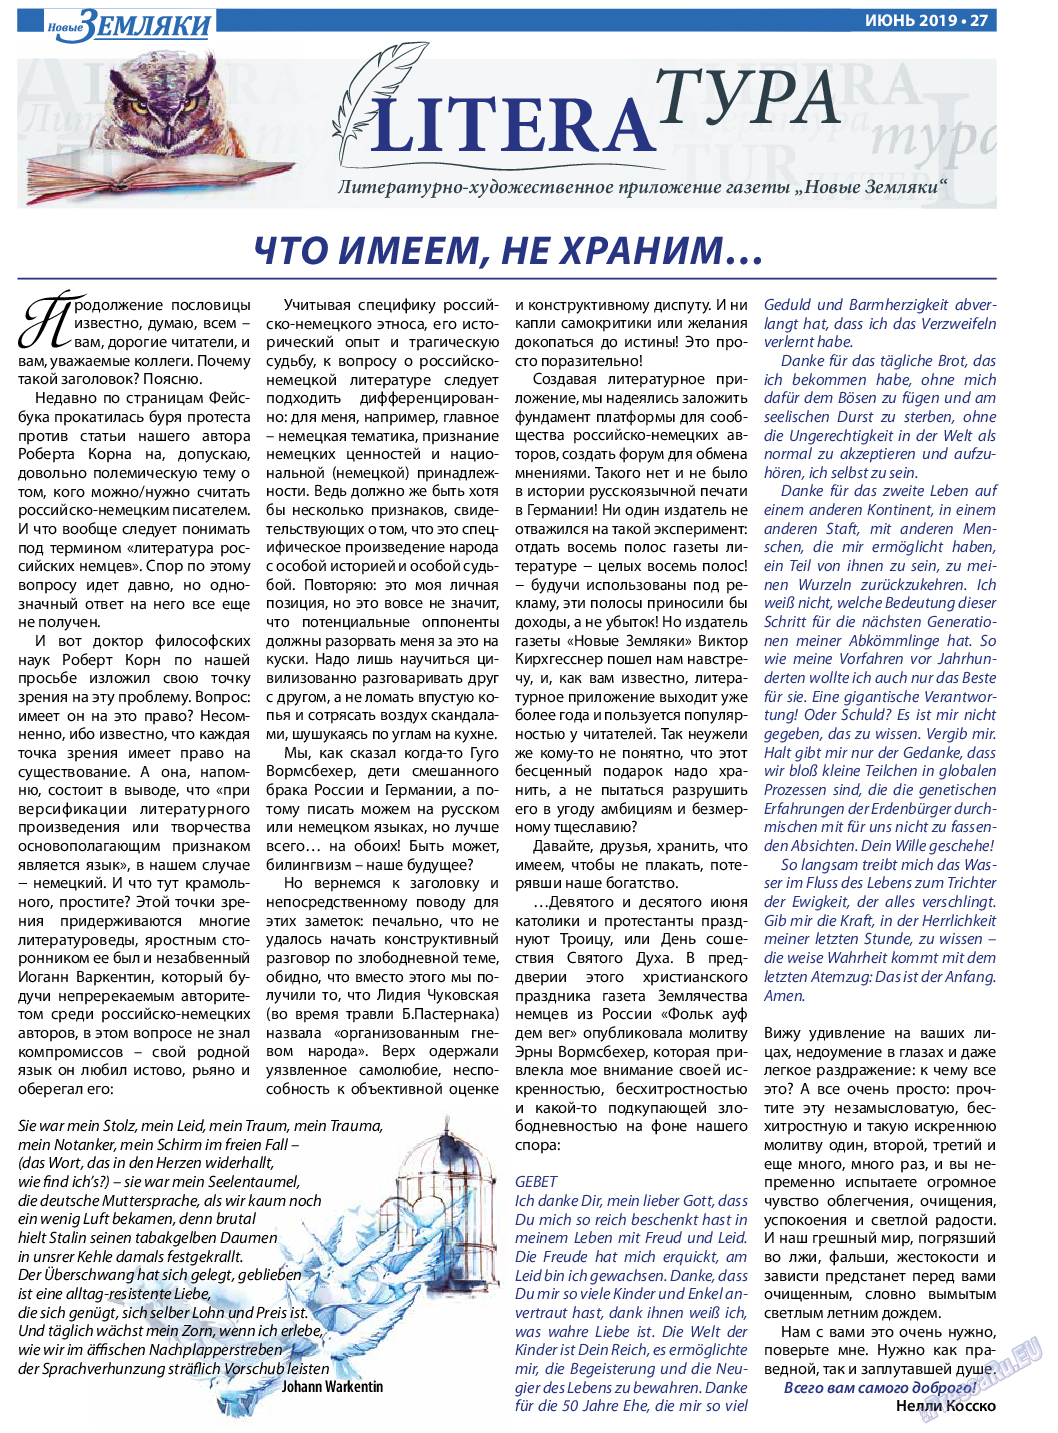 Новые Земляки, газета. 2019 №6 стр.27